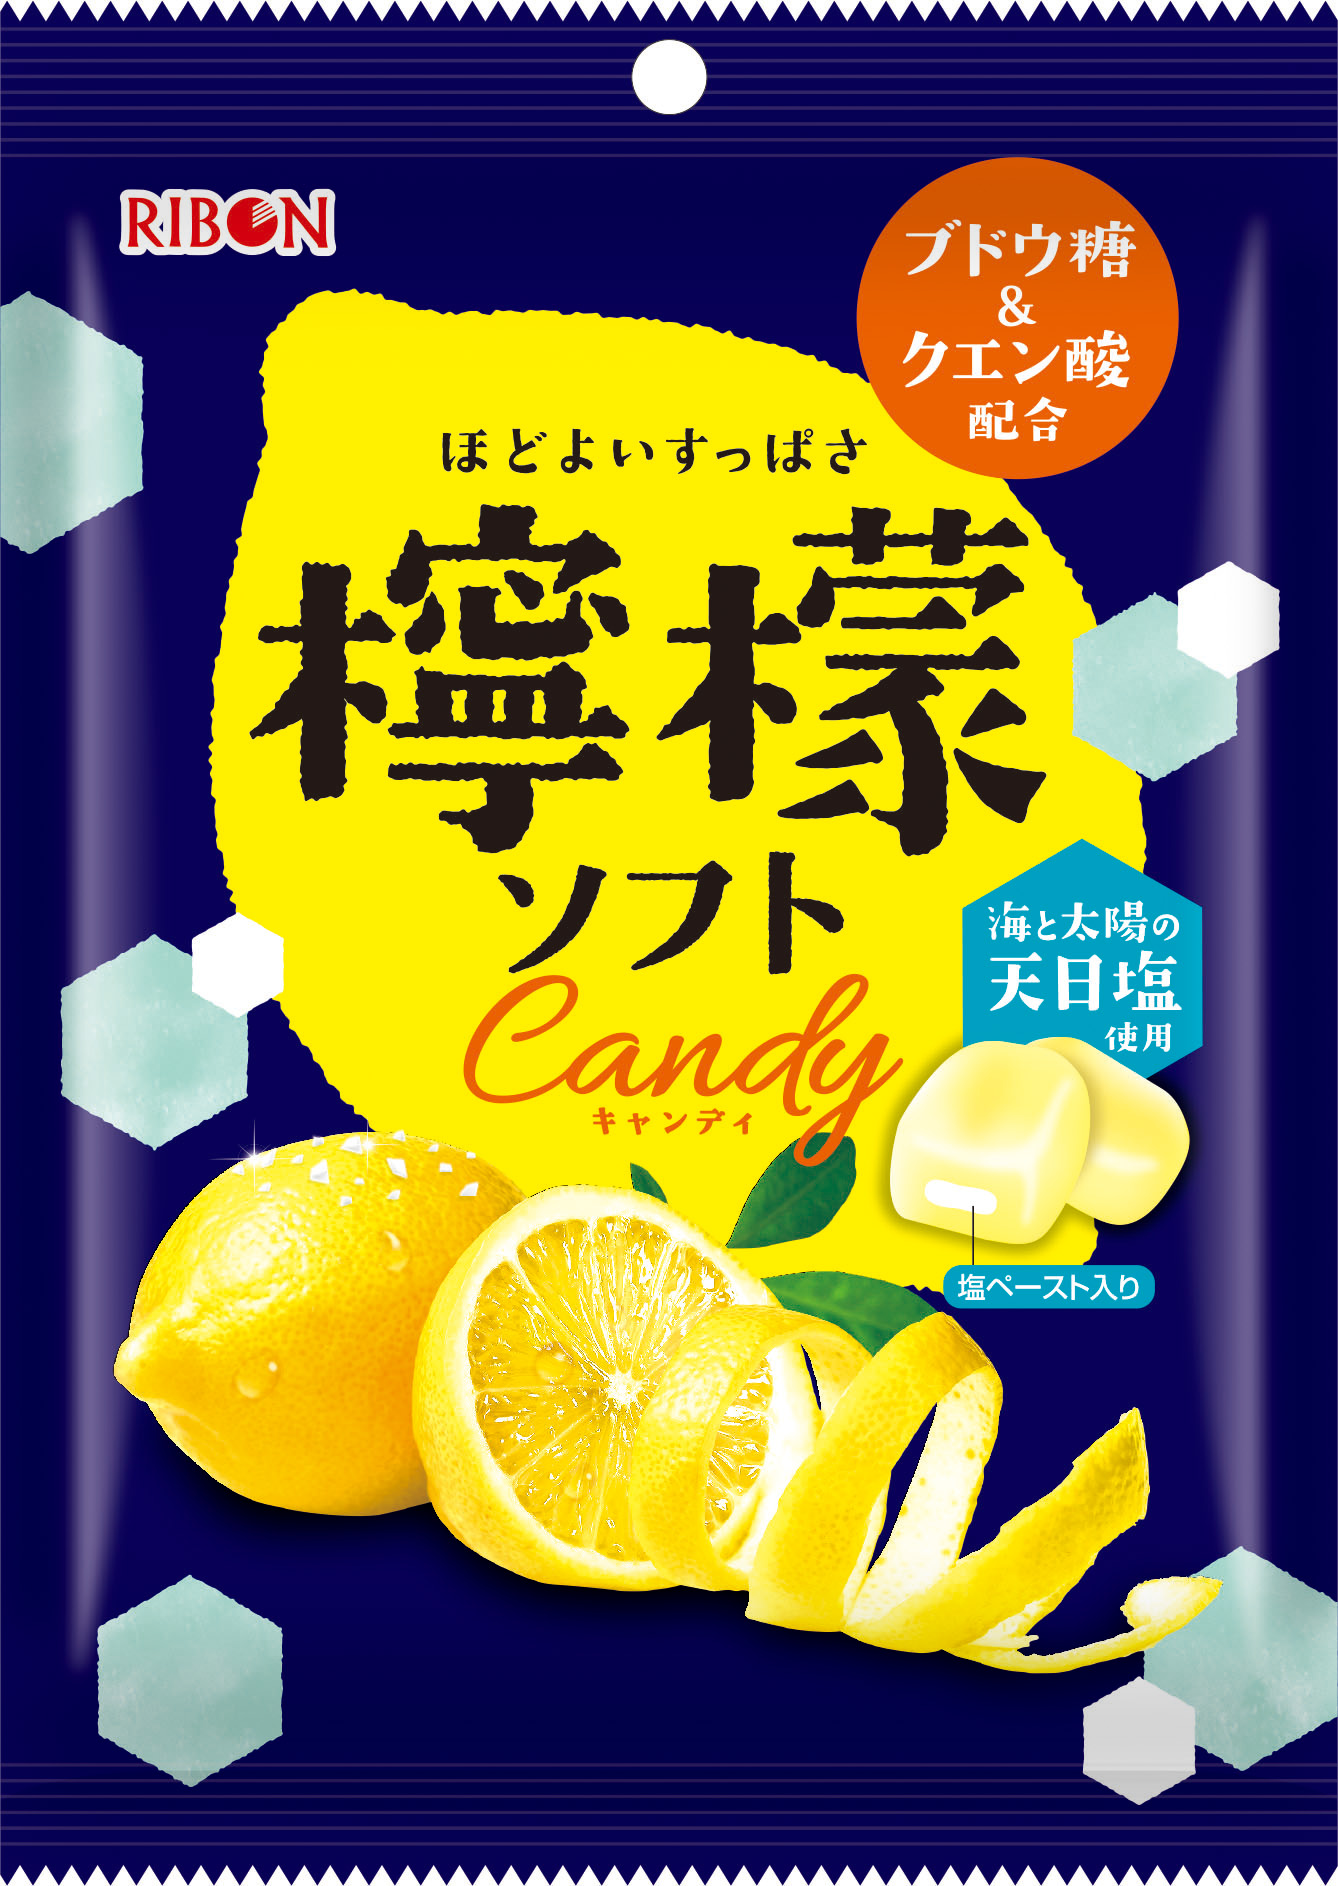 食べて爽やかな気分、リボンの新しい夏キャンディ『檸檬ソフト